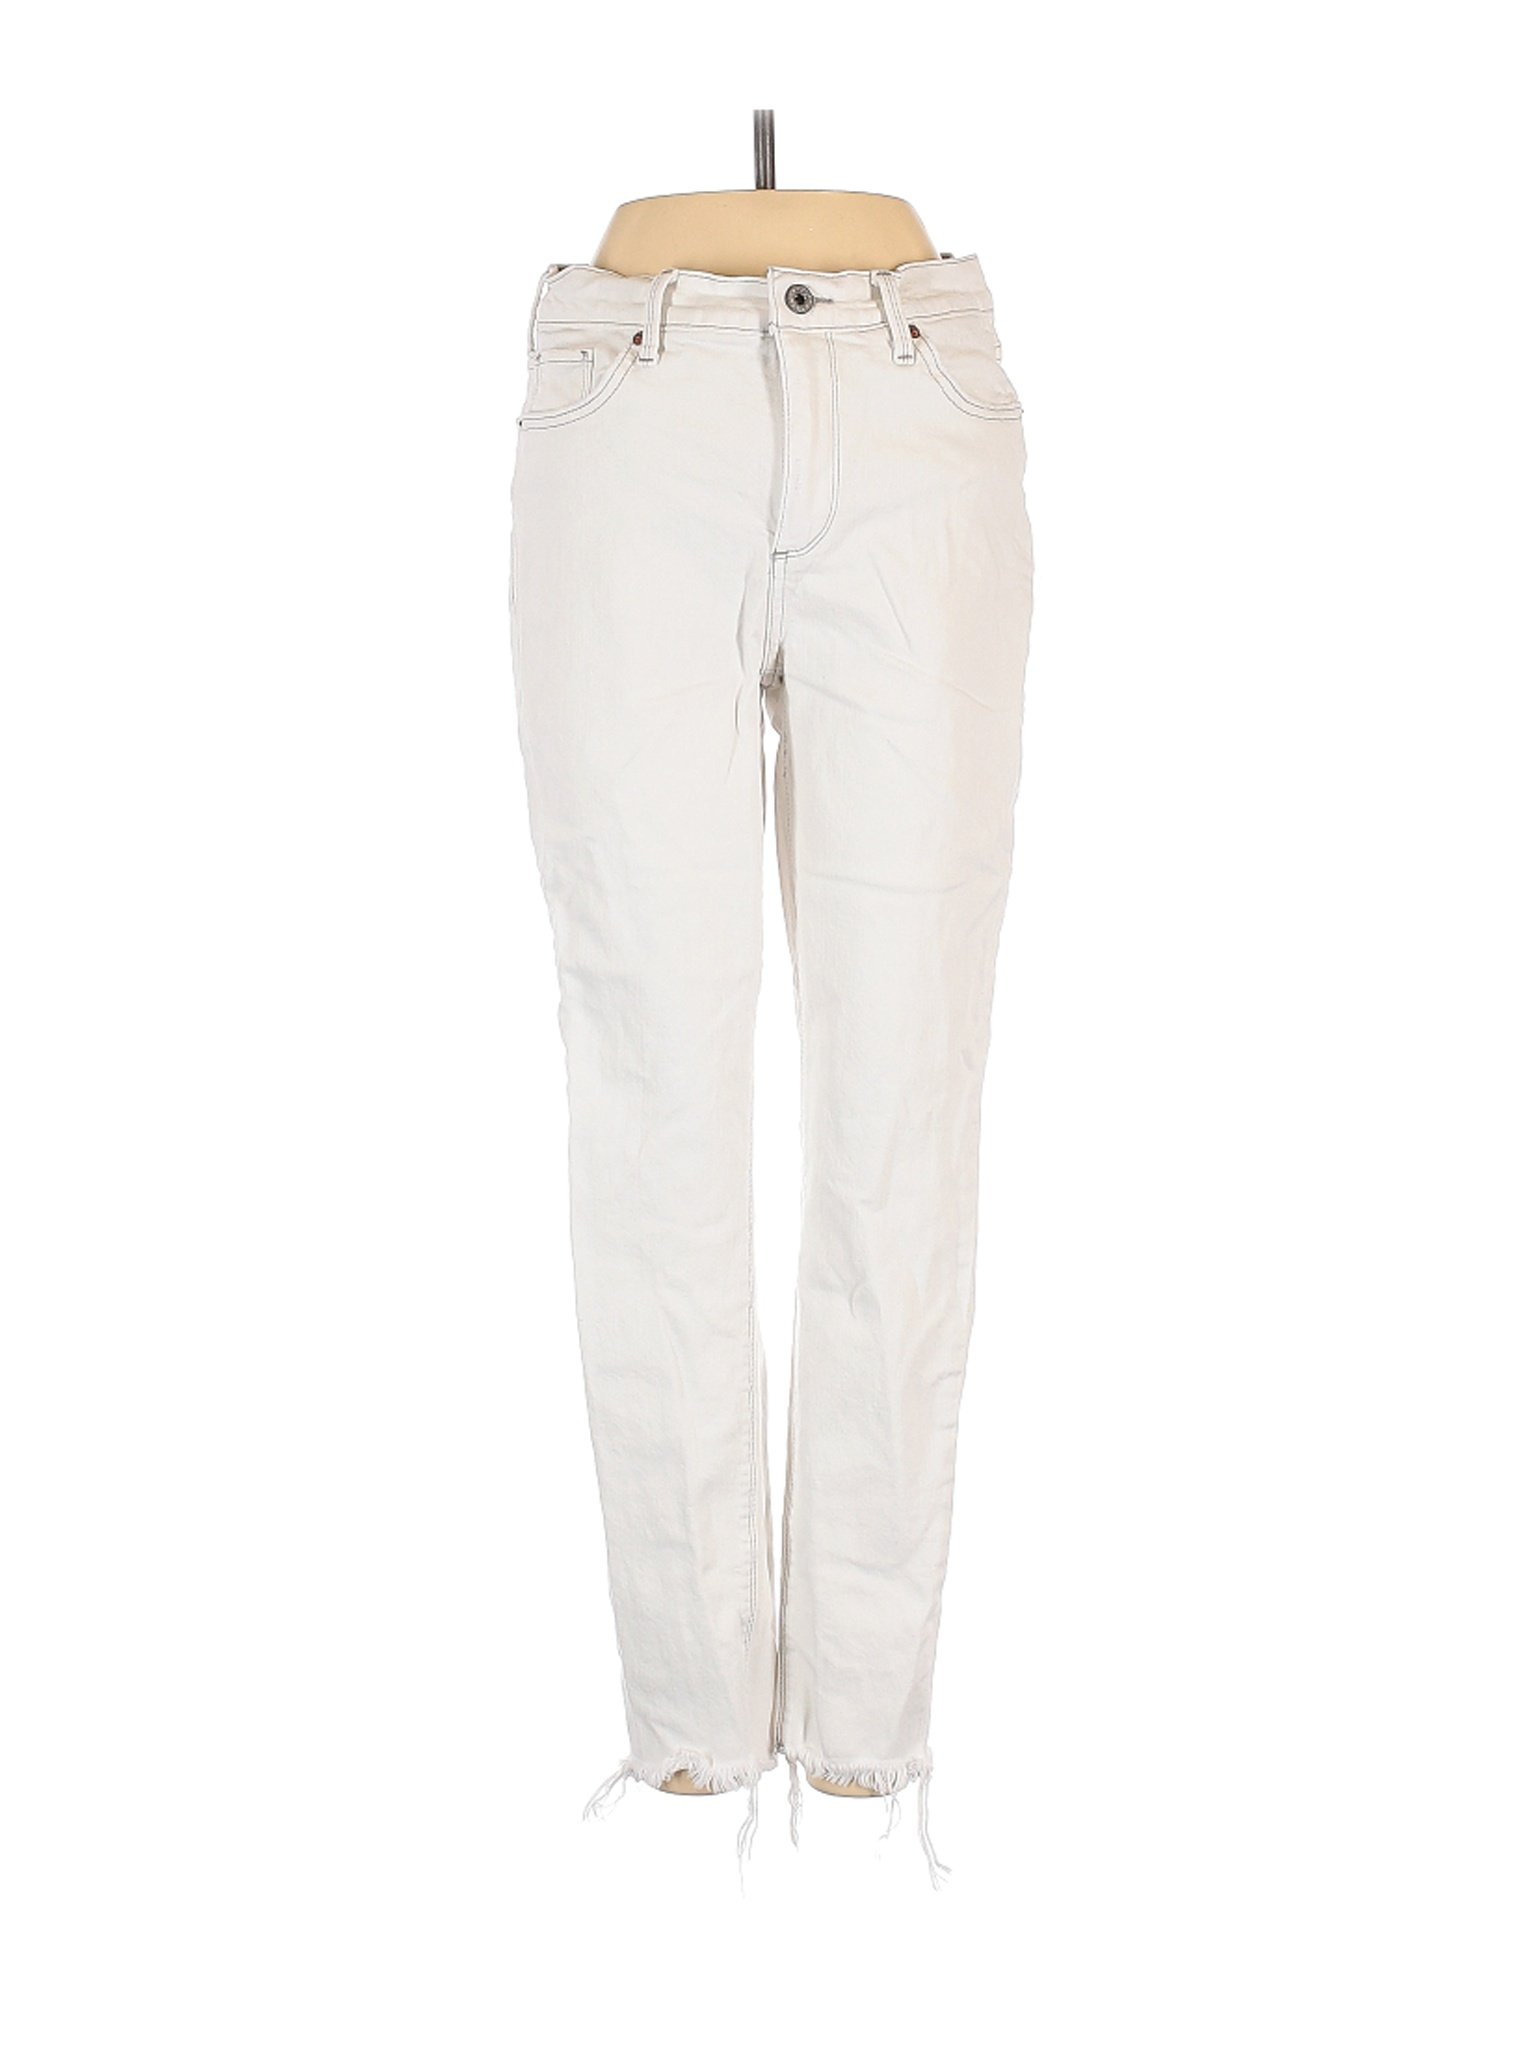 Lucky Brand Women White Jeans 4 | eBay